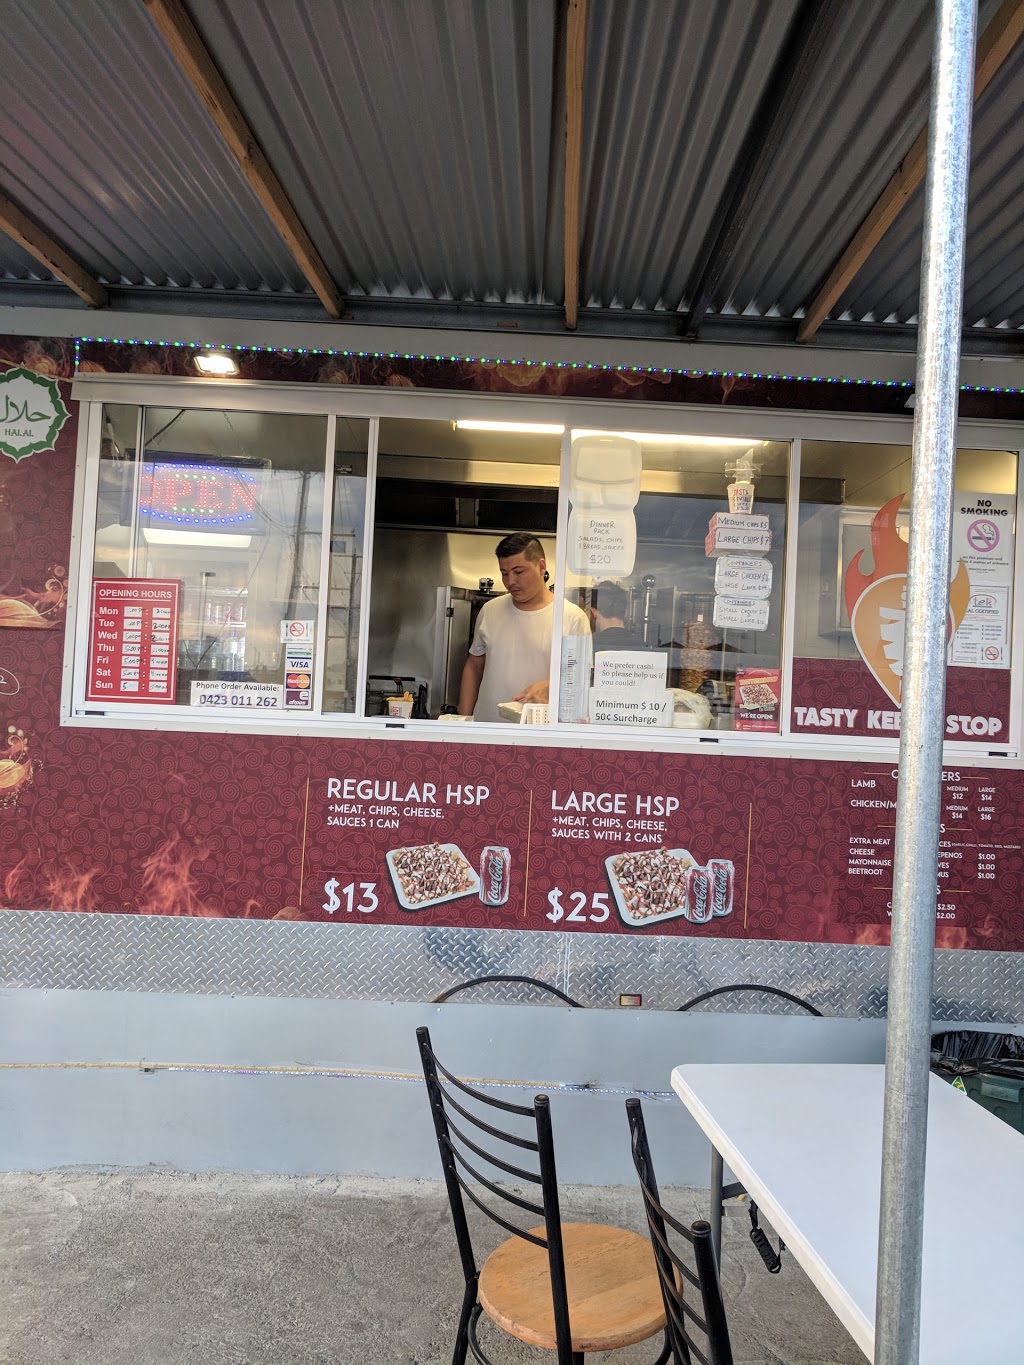 Hot & Tasty Kebab Stop | 27 Mair St E, Ballarat Central VIC 3350, Australia | Phone: 0423 011 262